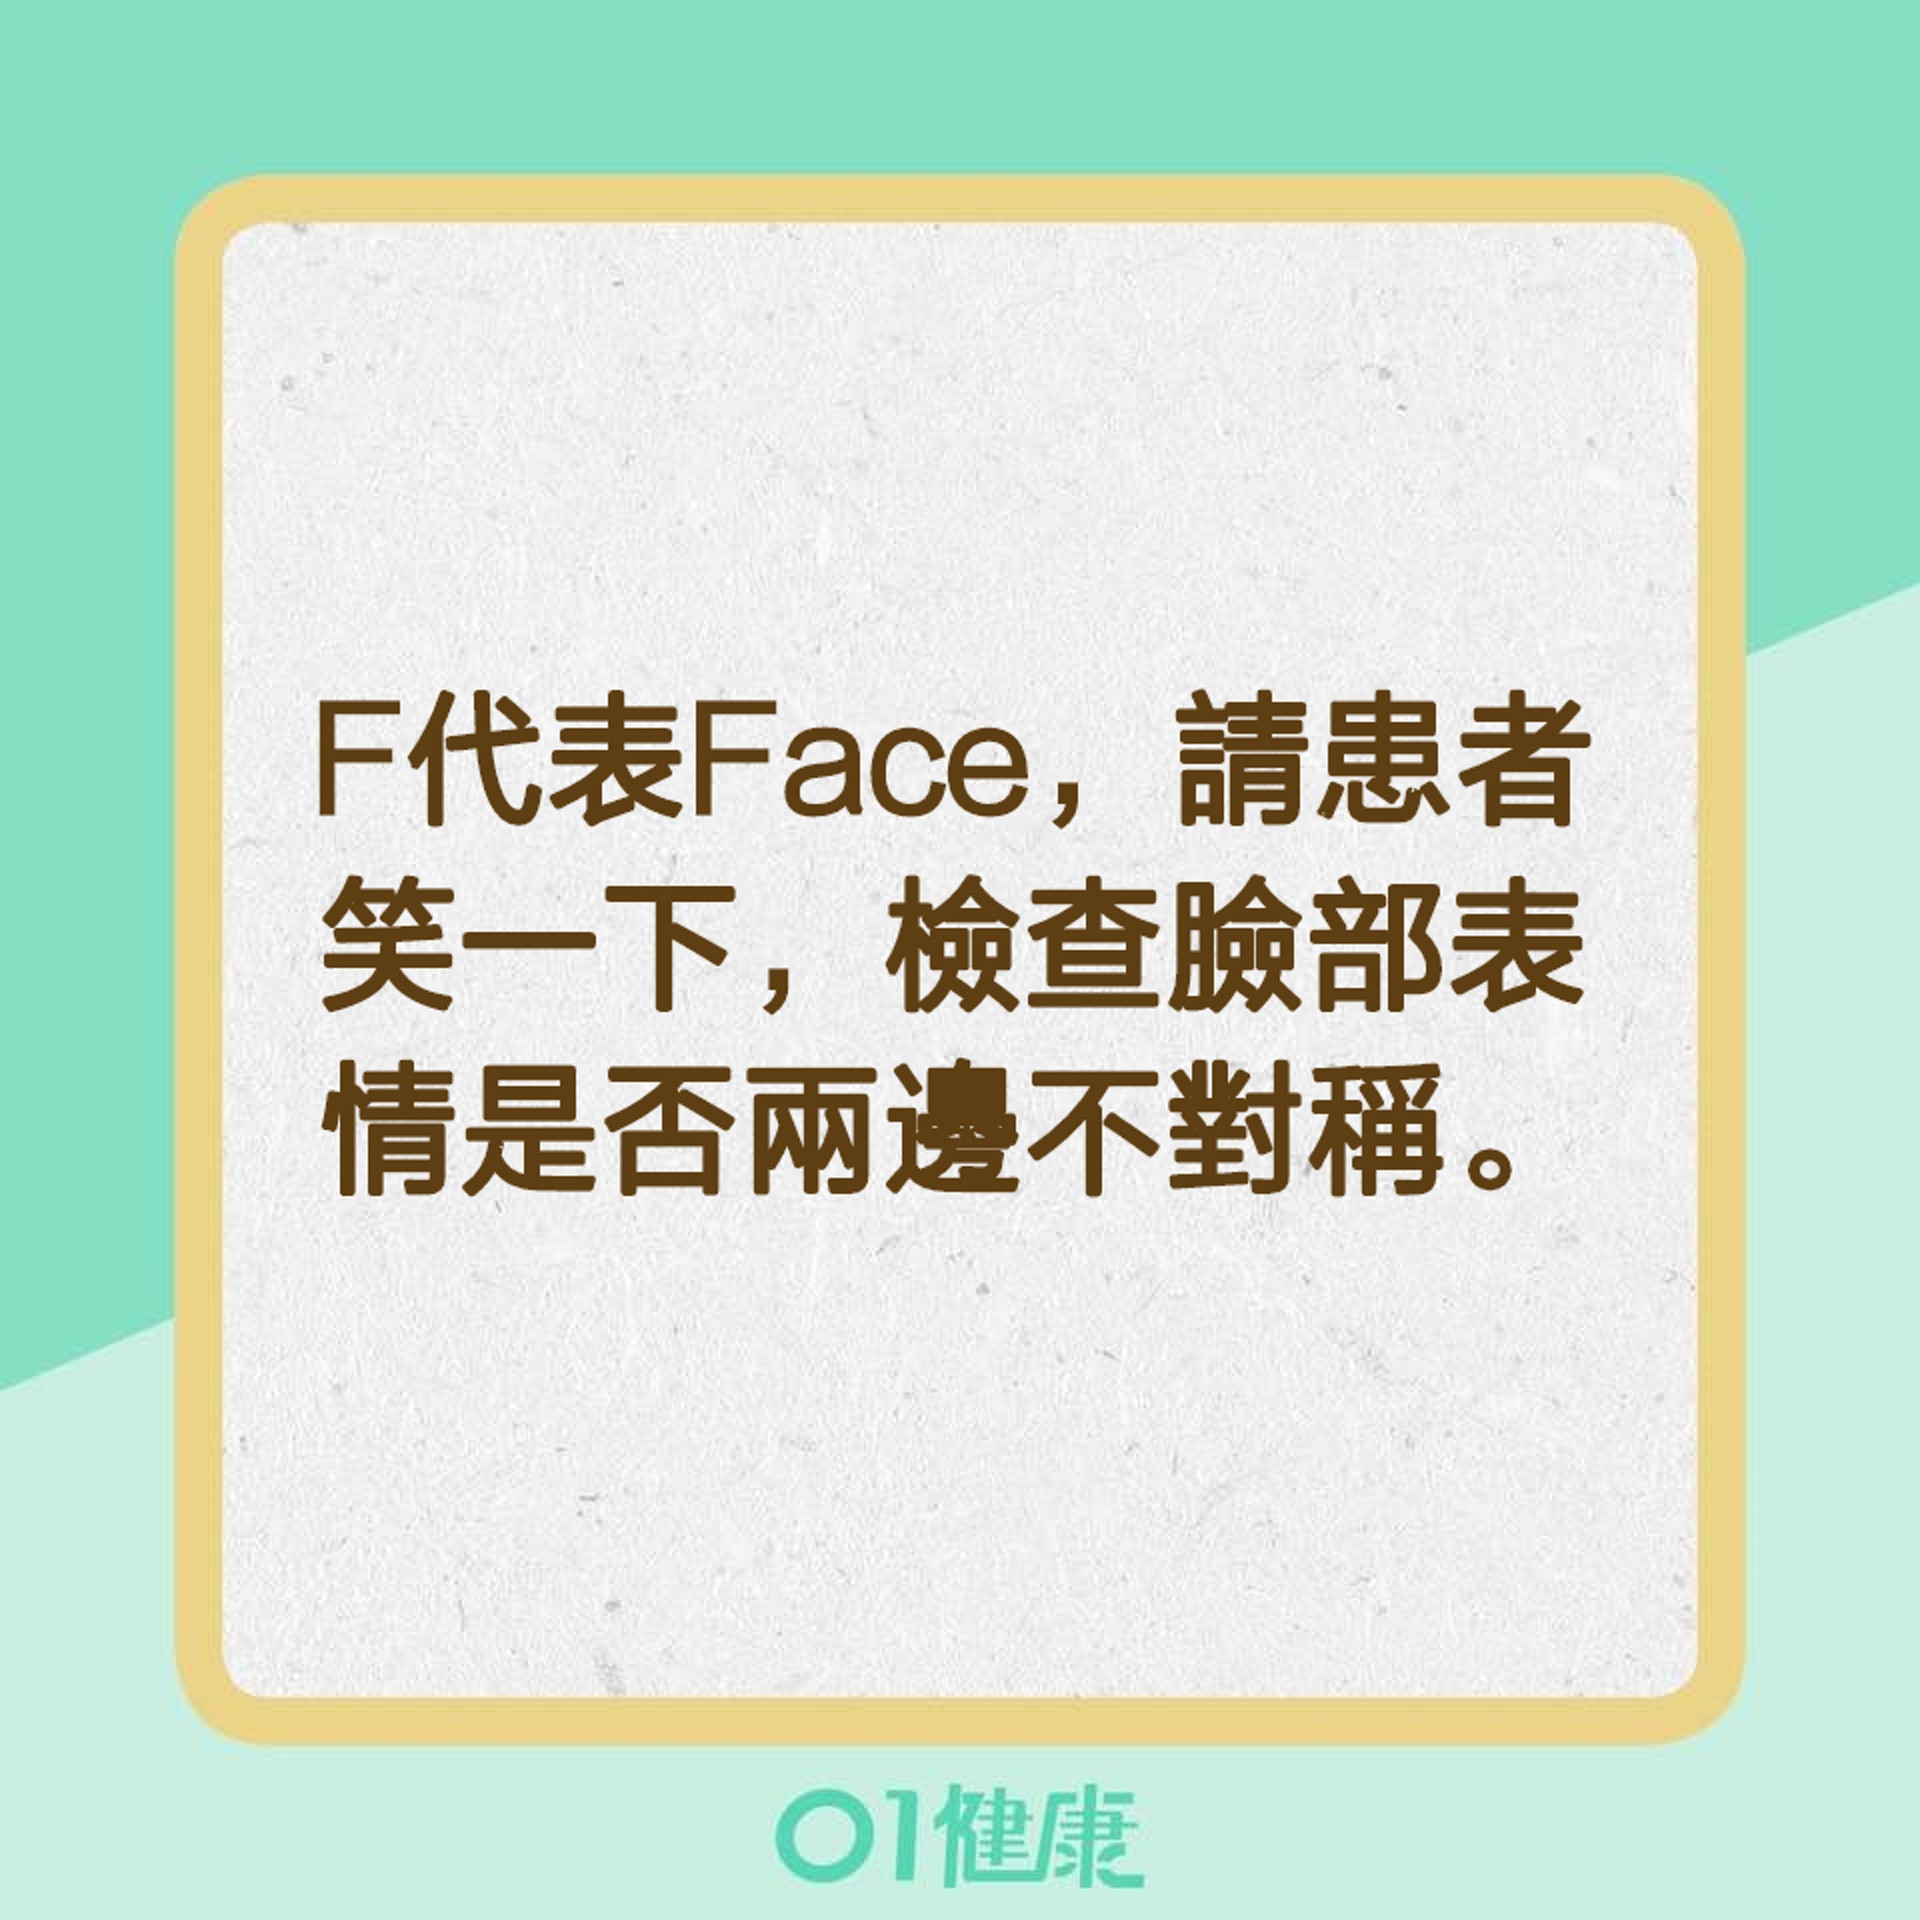 【辨別中風特徵的口訣「FAST」】F代表Face（01製圖）